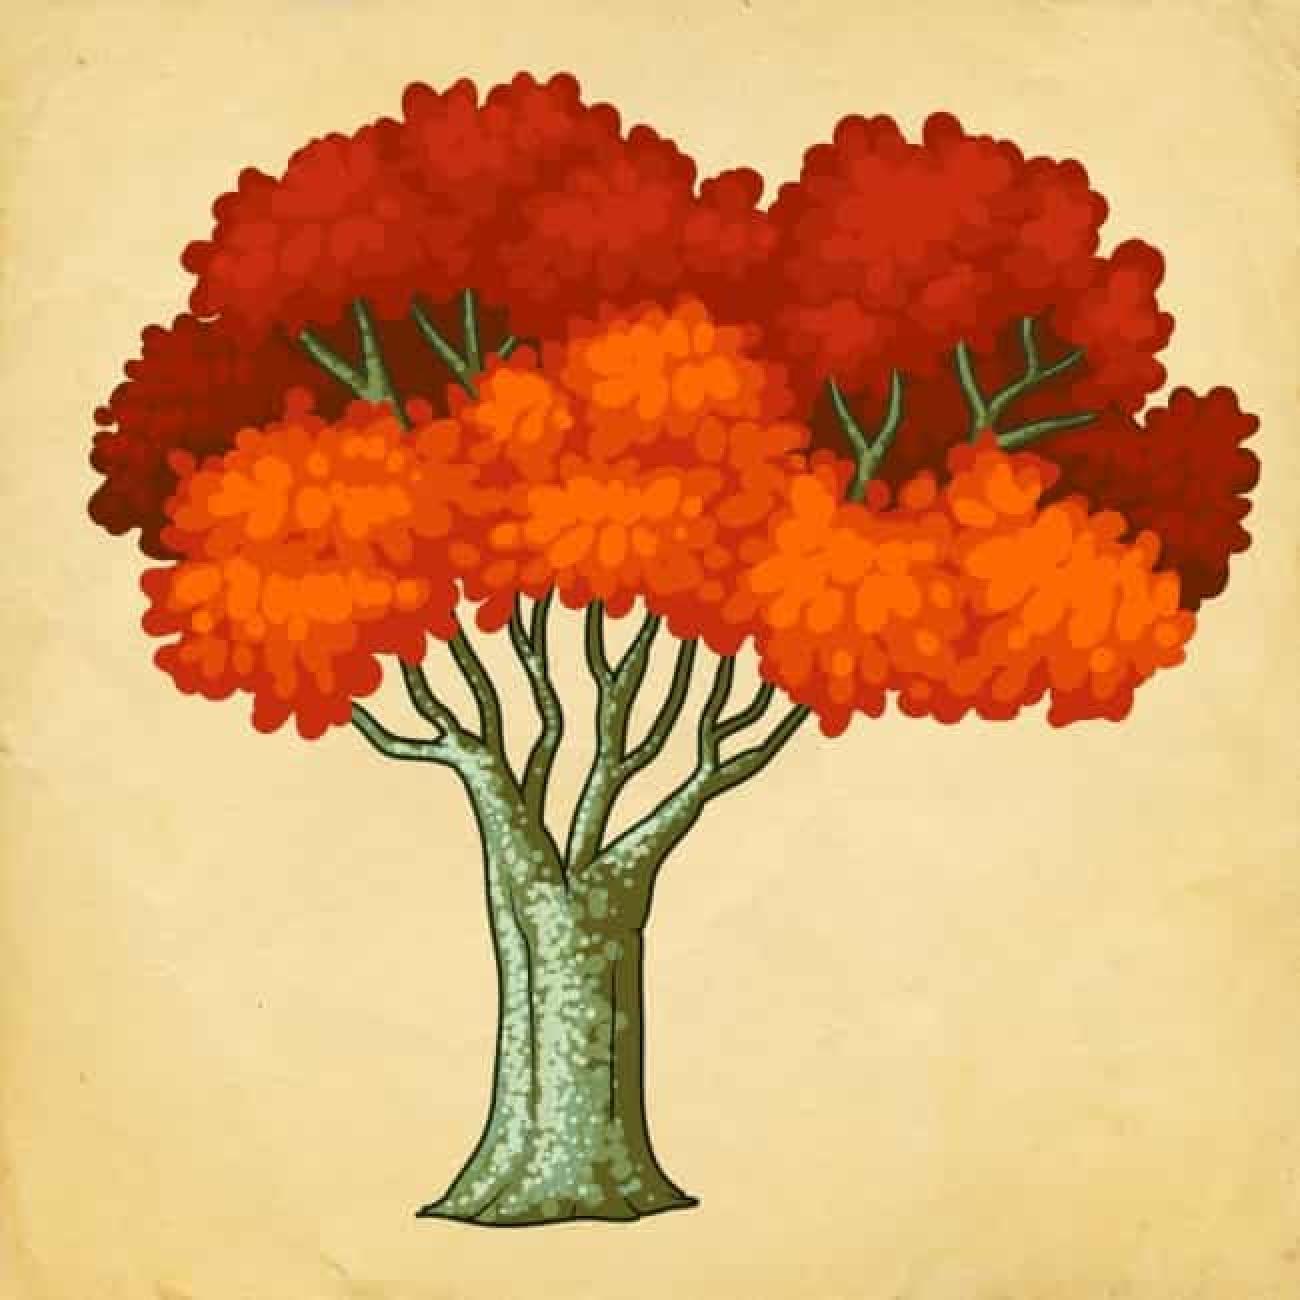 Ψυχολογικό τεστ: Το δέντρο που θα διαλέξεις σου δείχνει τις αλλαγές που θα έχεις το 2023